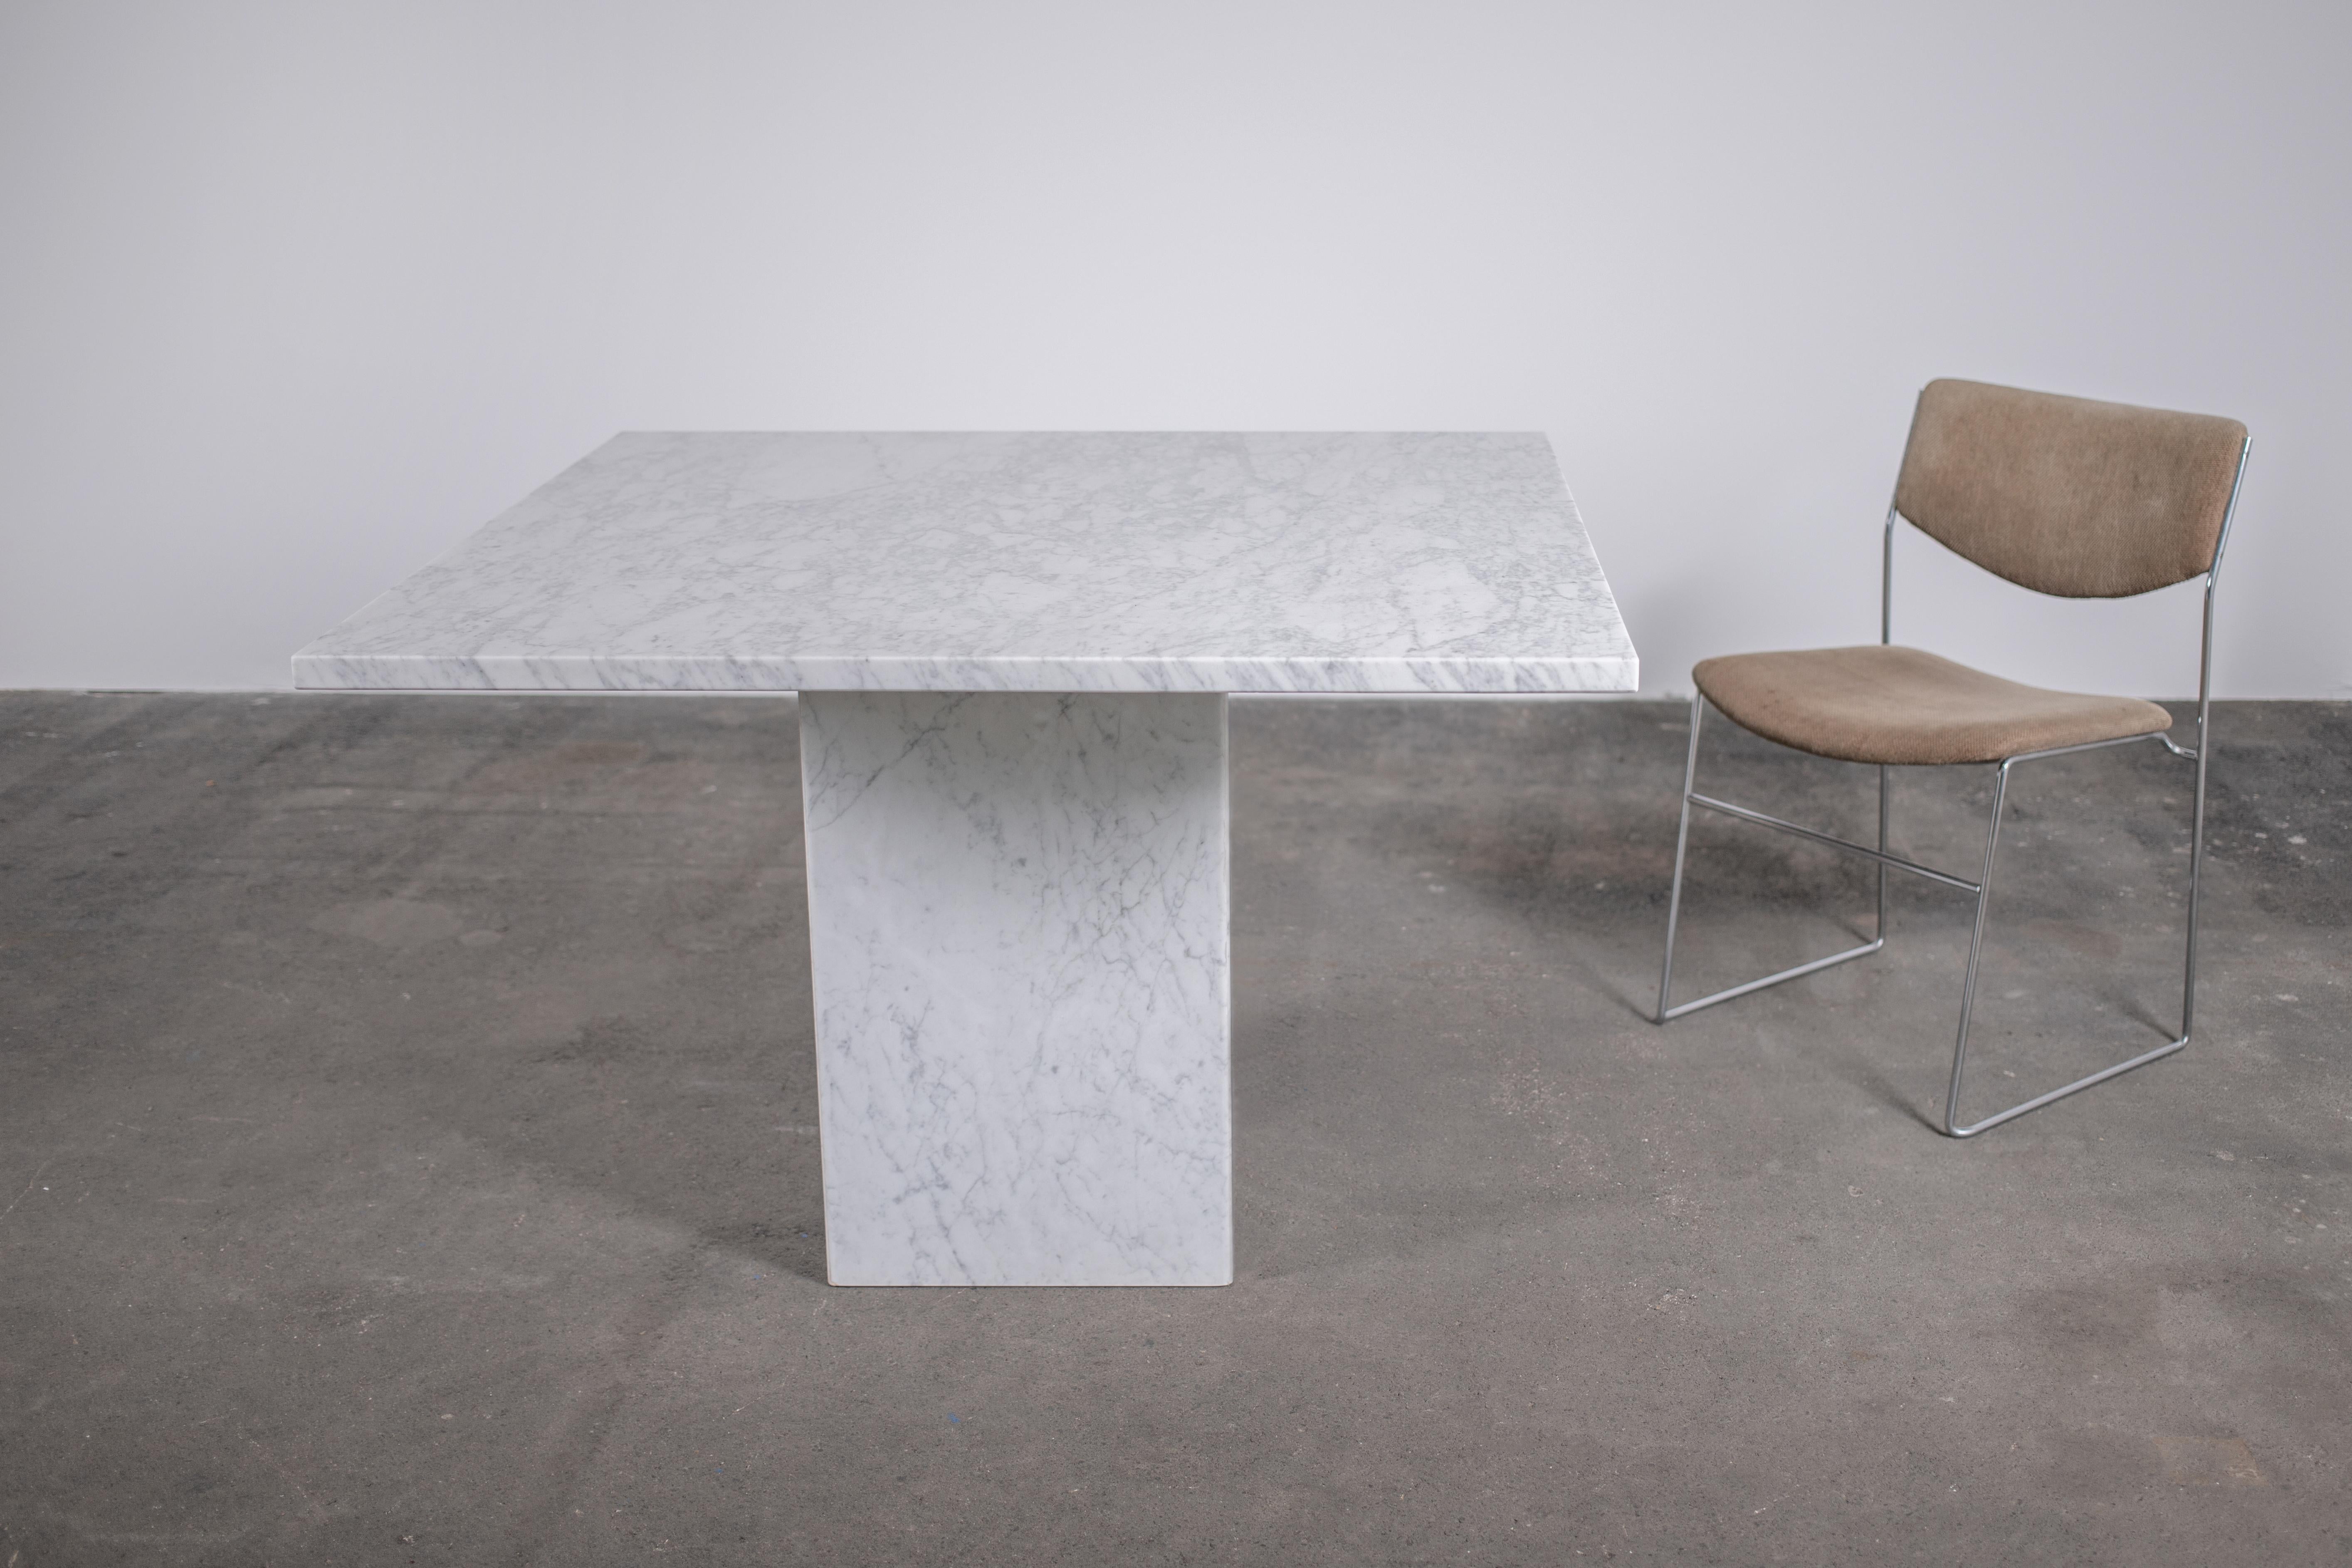 Monumentale table de salle à manger italienne vintage des années 1970 en marbre blanc de Carrera de format carré brutaliste avec un seul pied carré, également en marbre blanc de Carrera. La plaque épaisse de 3 cm (1 pouce) repose sur une base de 4